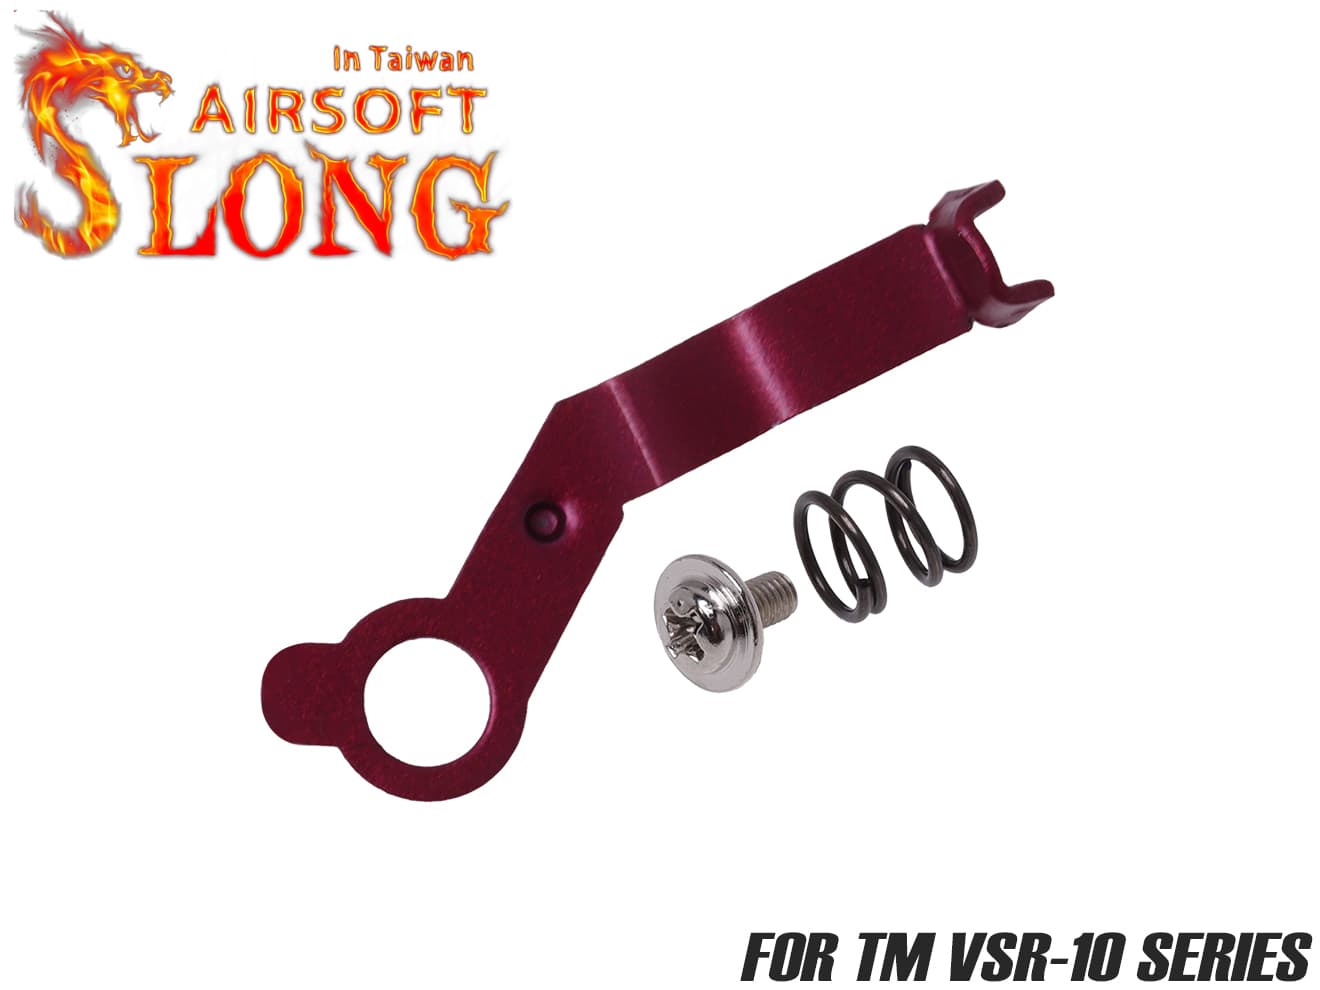 SLONG AIRSOFT ステンレス ロープロファイル セーフティレバー VSR-10 RED 強度 強化 小型化 コッキング 誤作動防止 カスタム パーツ ステン 素材 耐久性